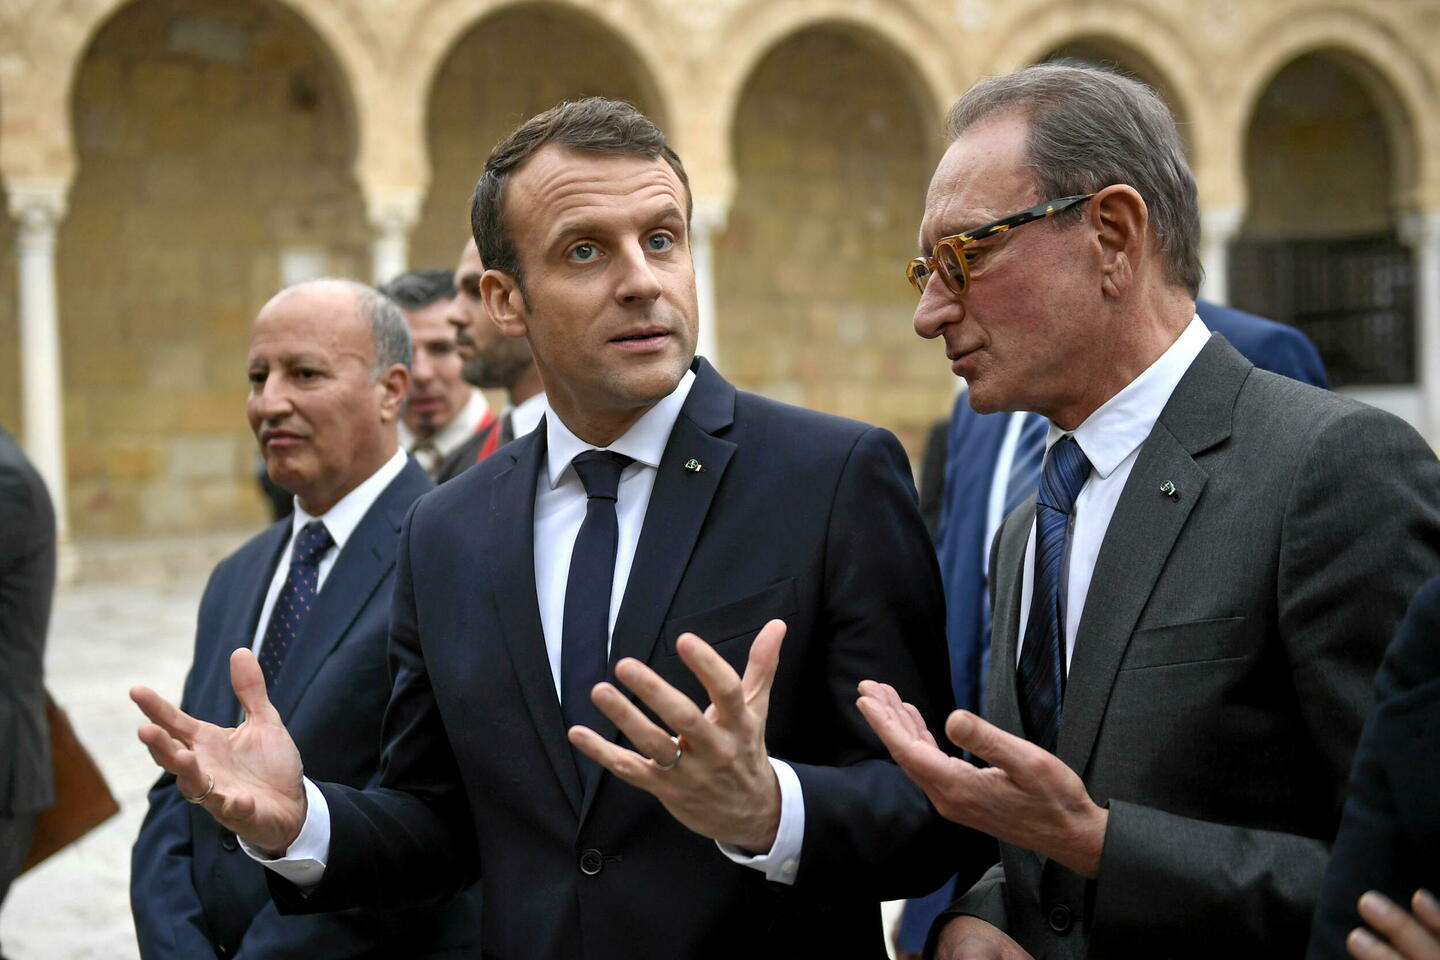 , Actualités nationale: Chômage, réformes… Bertrand Delanoë tacle la politique sociale d’Emmanuel Macron #France